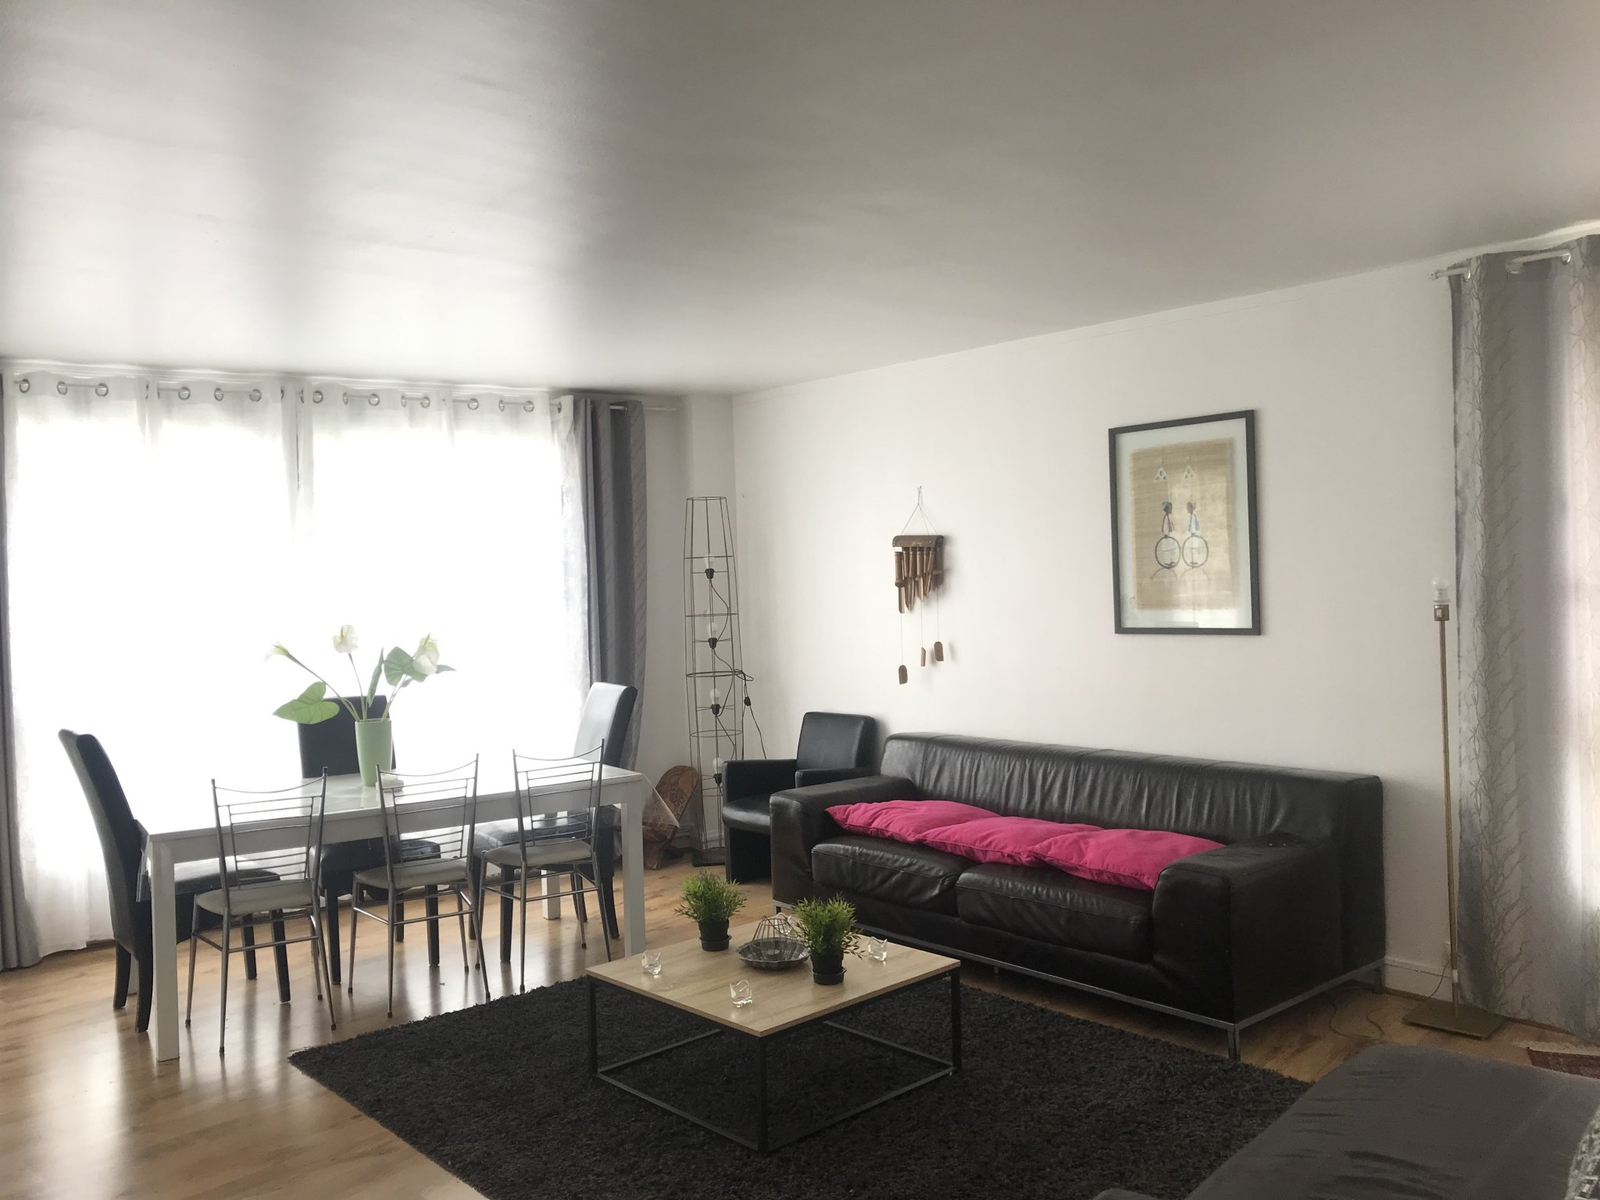 Location appartement meublé 5 pièces 110 m2